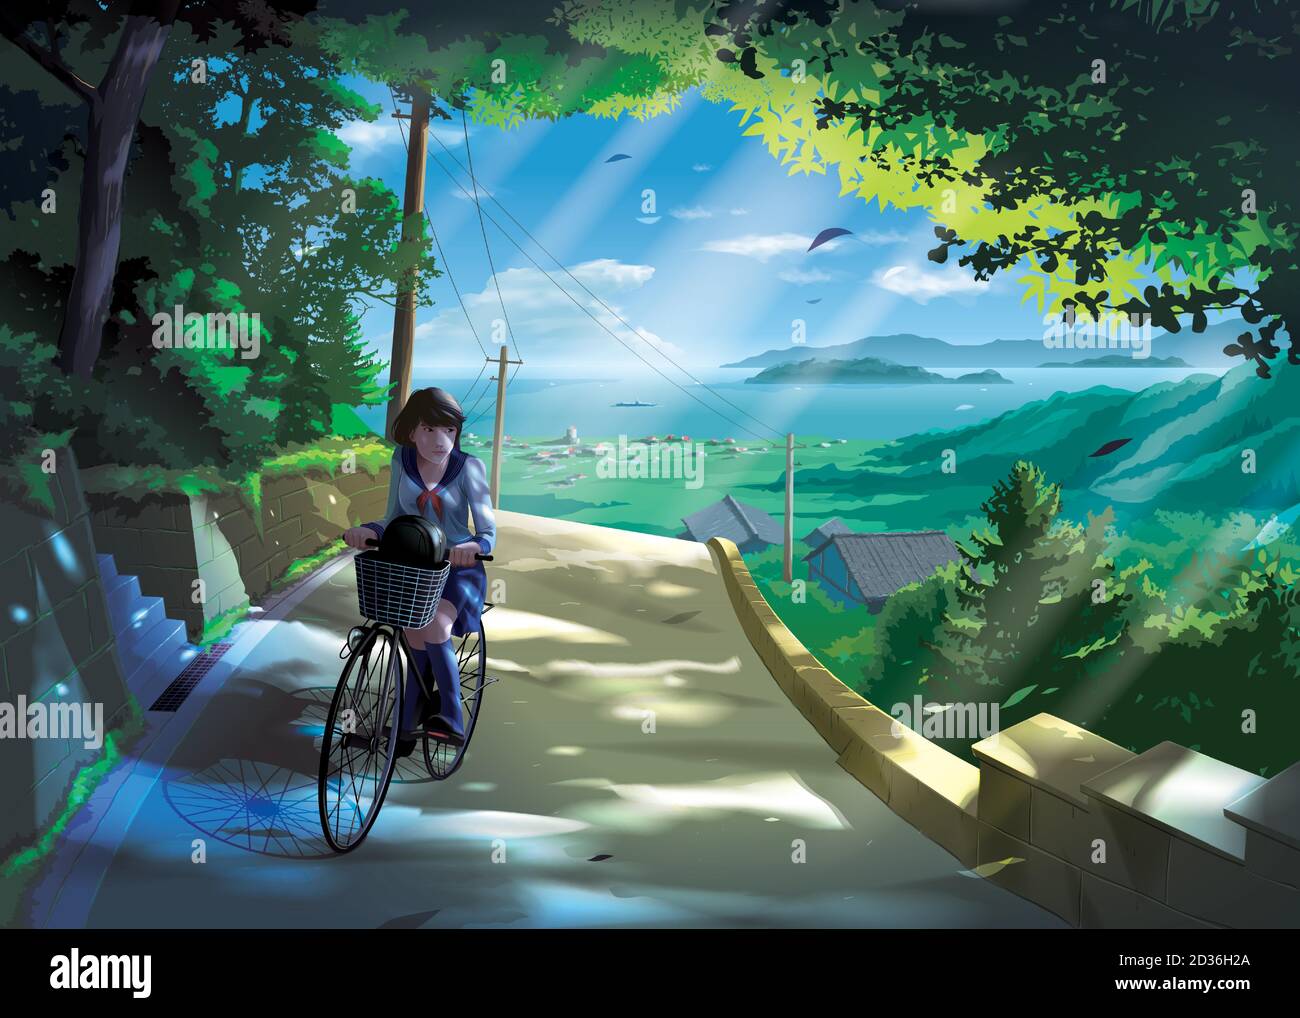 Illustrazione vettoriale in stile anime di una ragazza giapponese gli studenti cavalcano una bicicletta su una strada in campagna Illustrazione Vettoriale